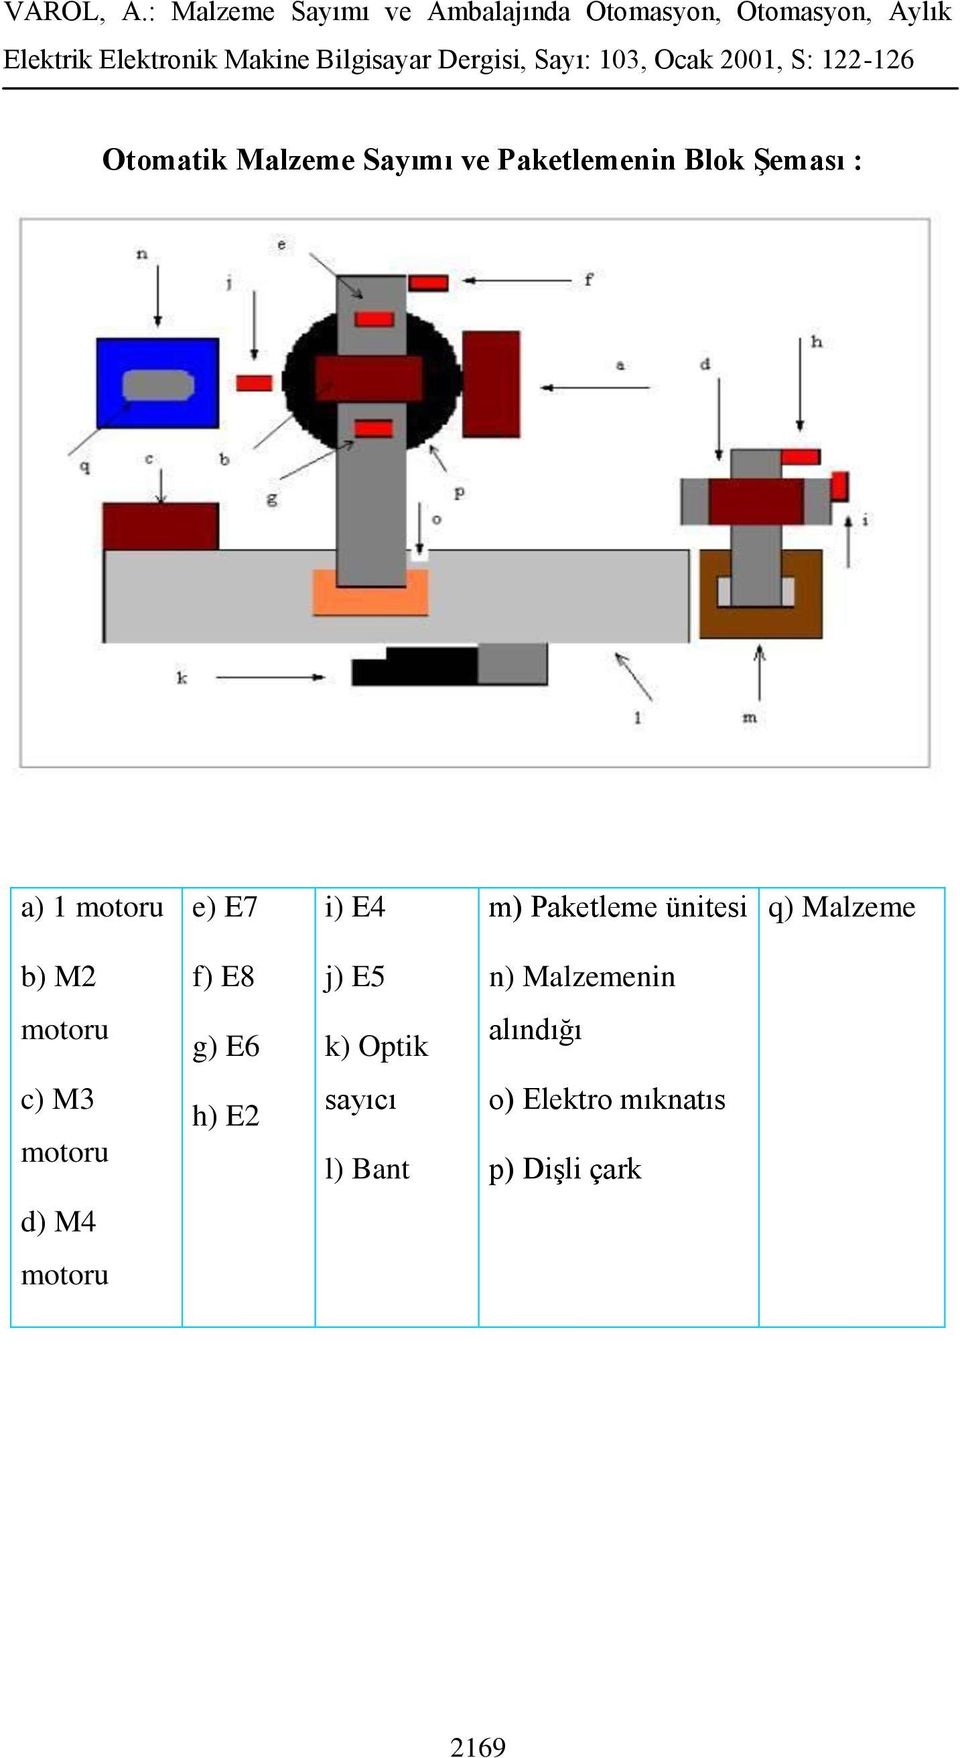 j) E5 n) Malzemenin motoru g) E6 k) Optik alındığı c) M3 motoru